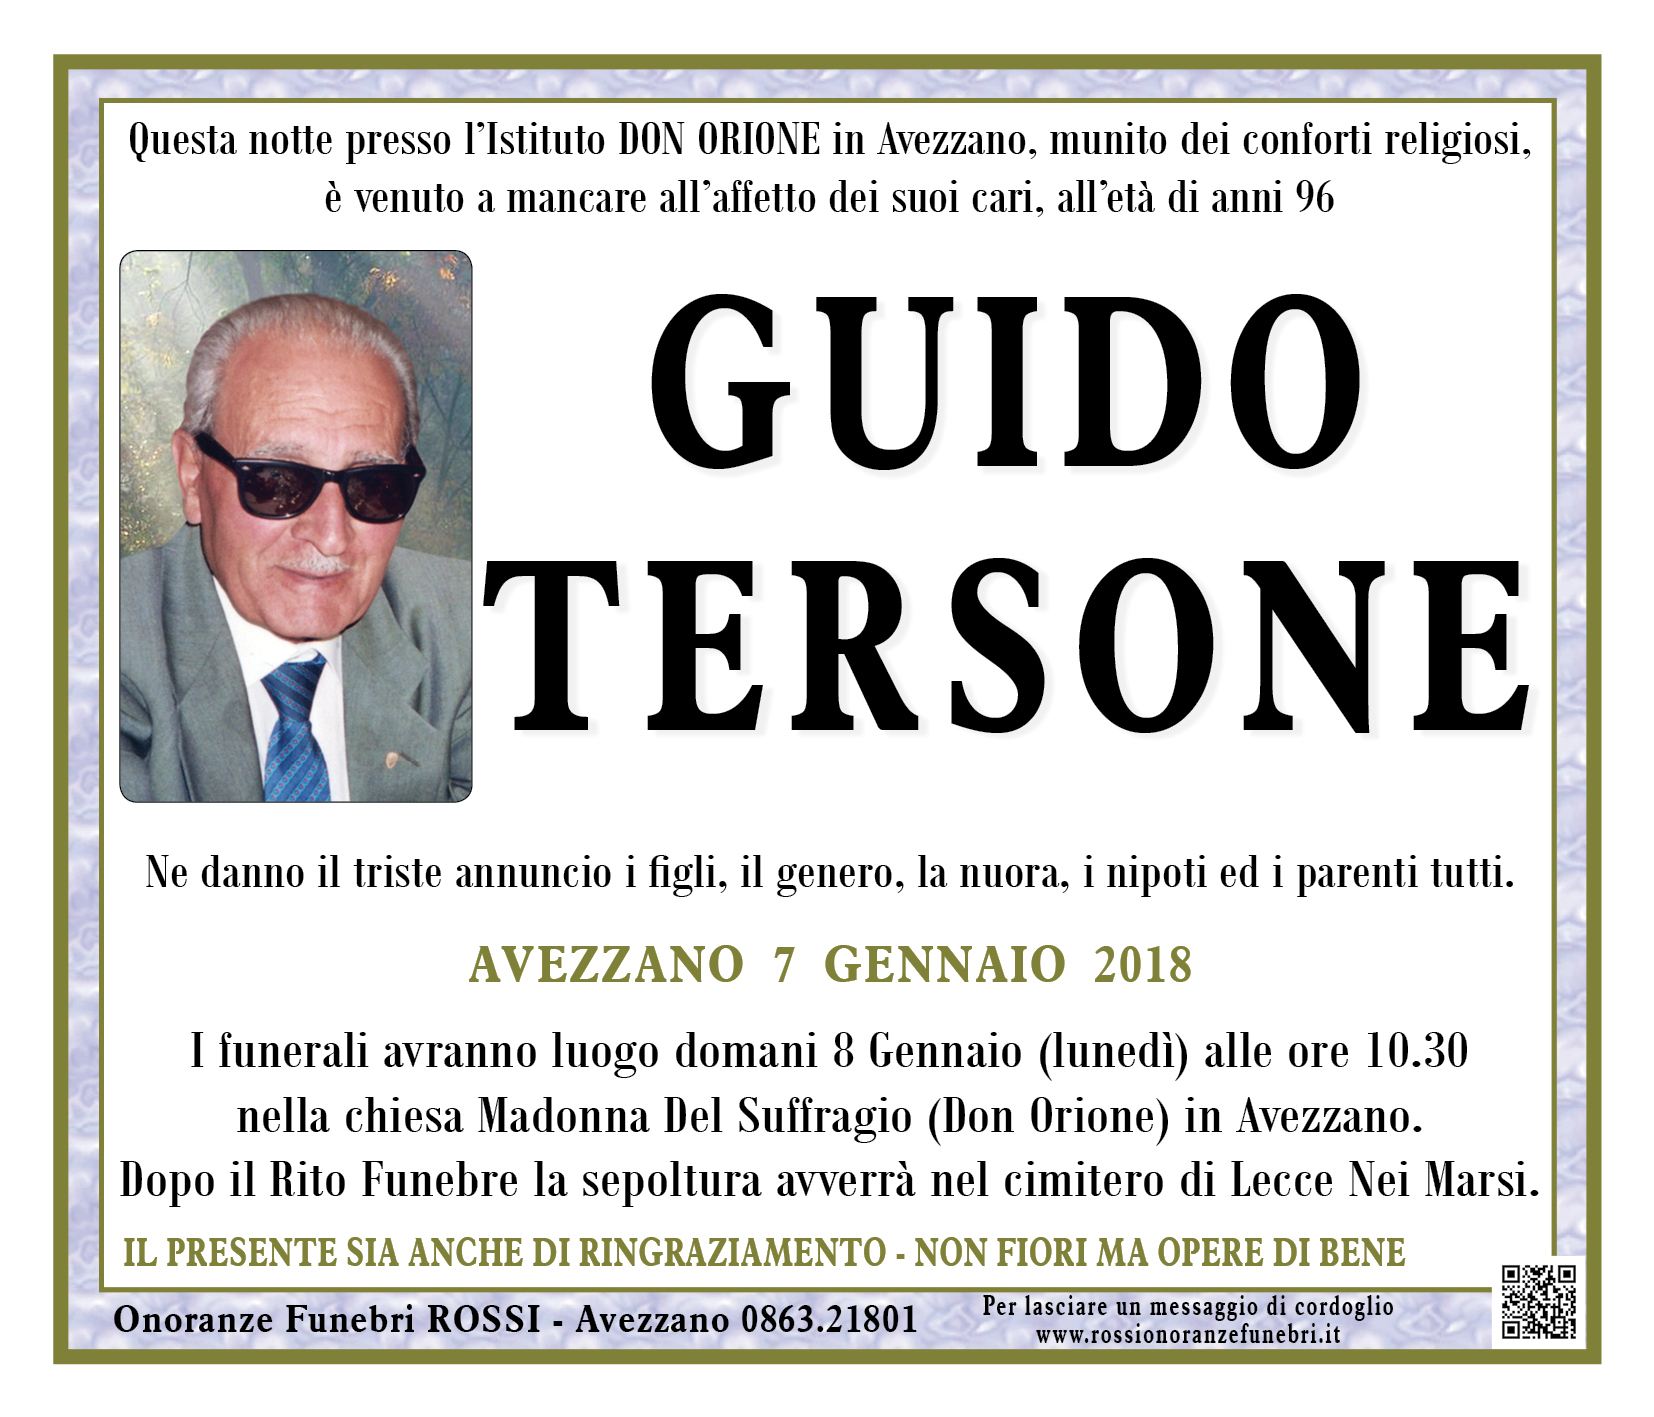 Guido Tersone